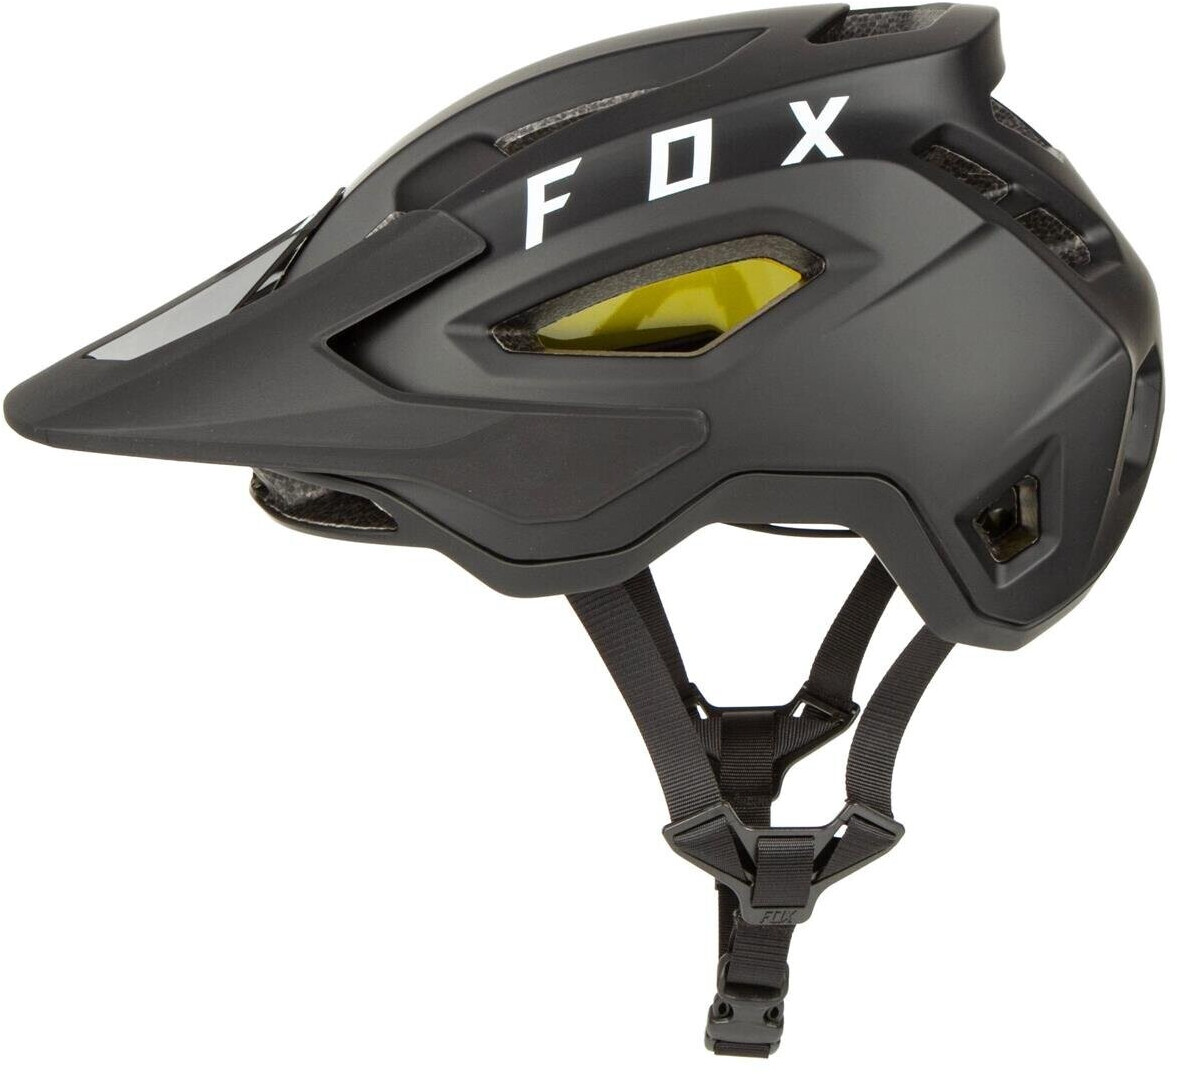 Buy Fox Speedframe Mips black from £89.00 (Today) – Best Deals on ...